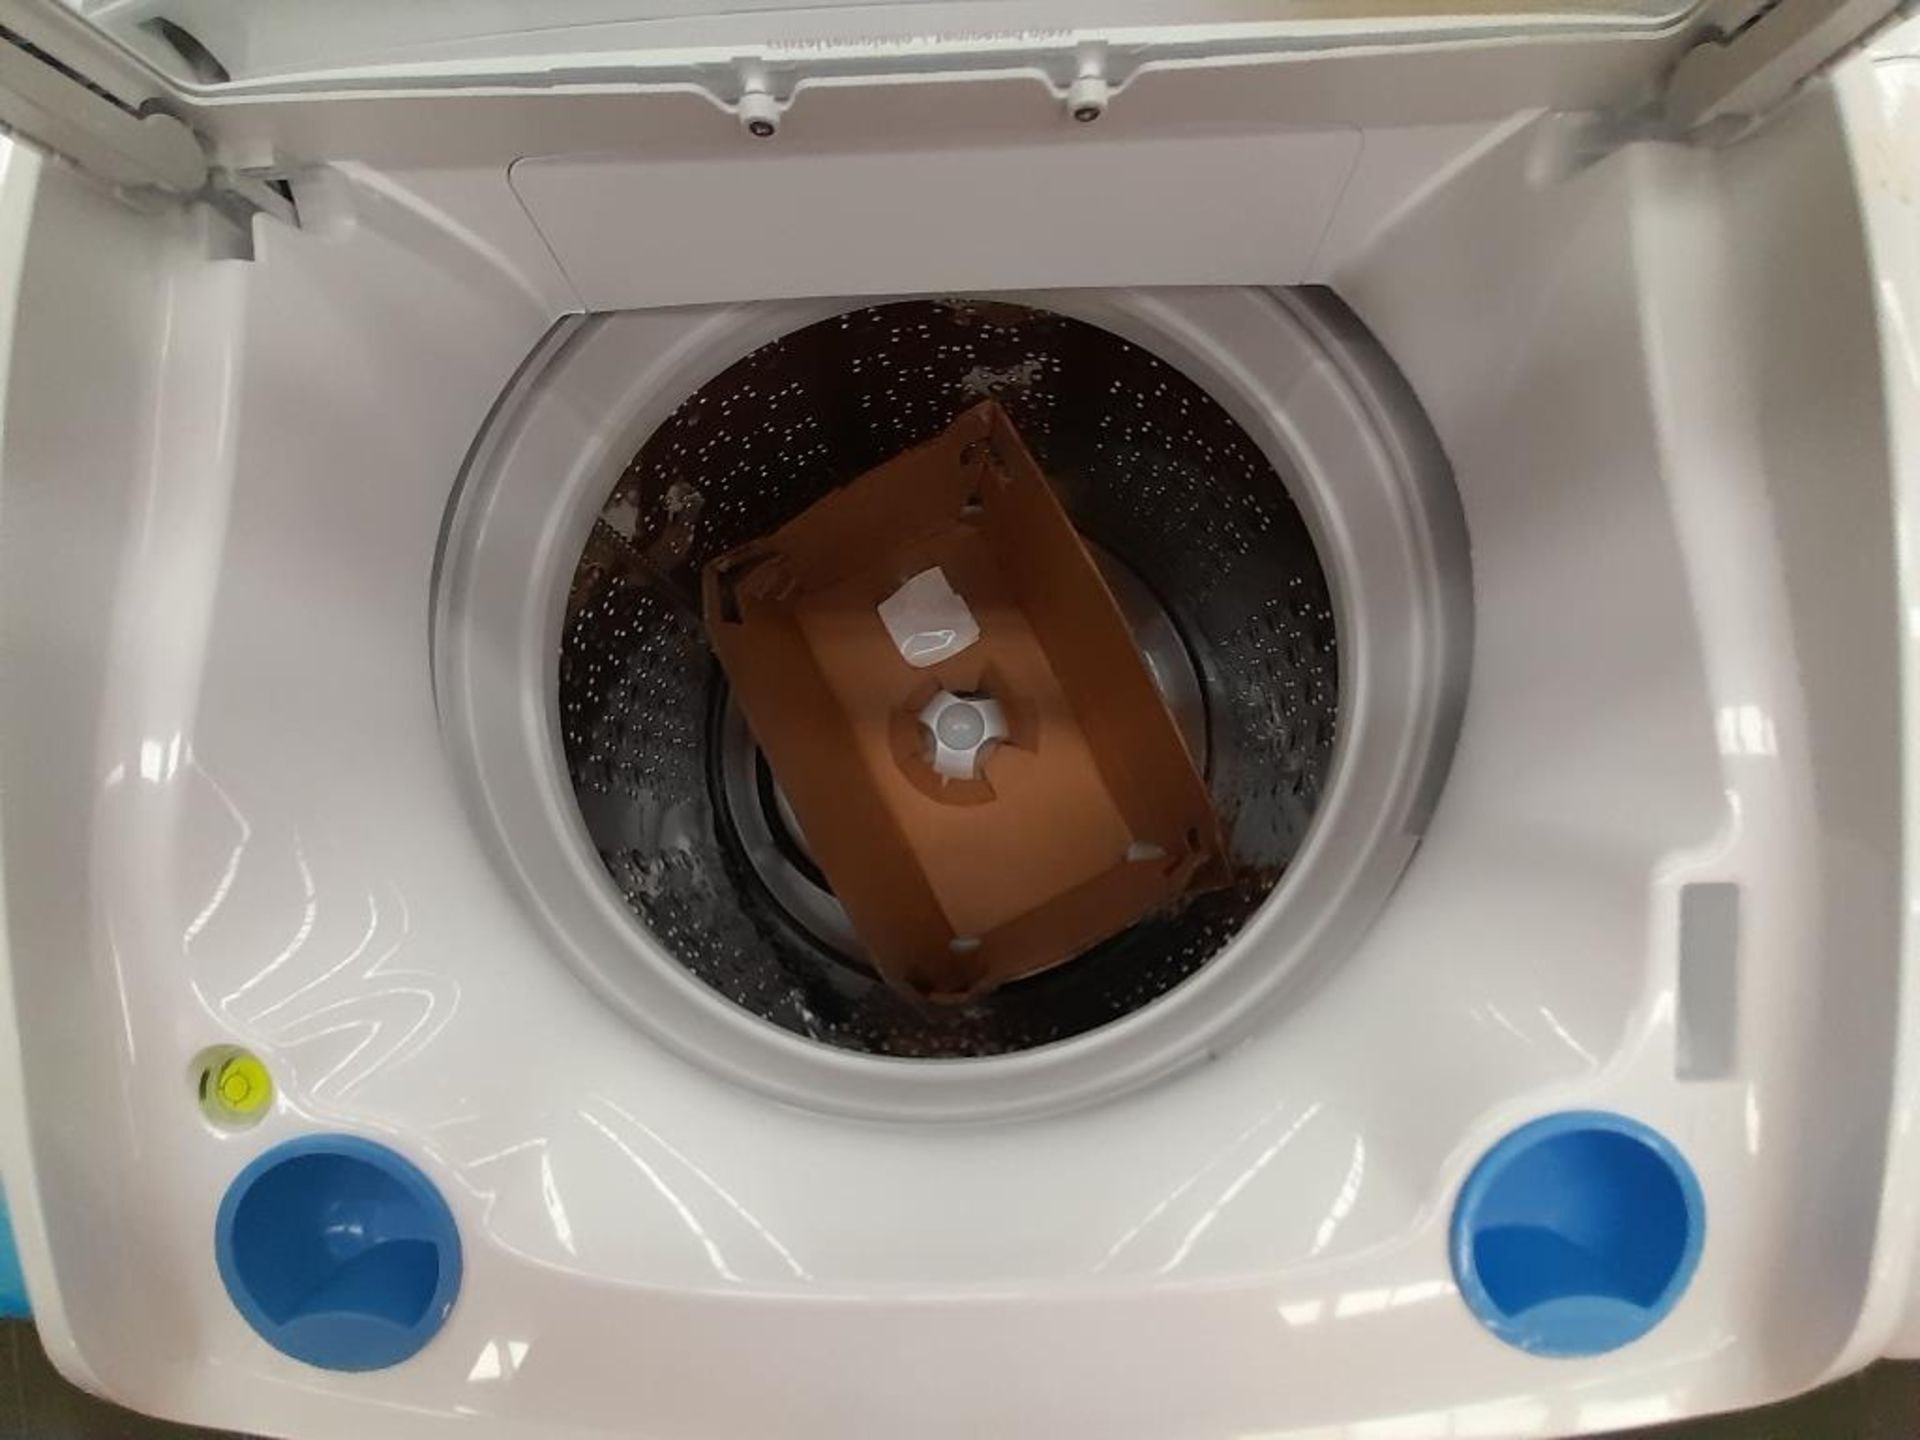 Lote de Lavadora y Secadora contiene: 1 lavadora de 16 KG Marca MABE, Modelo LMA46102VBAB0, Serie S - Image 4 of 6